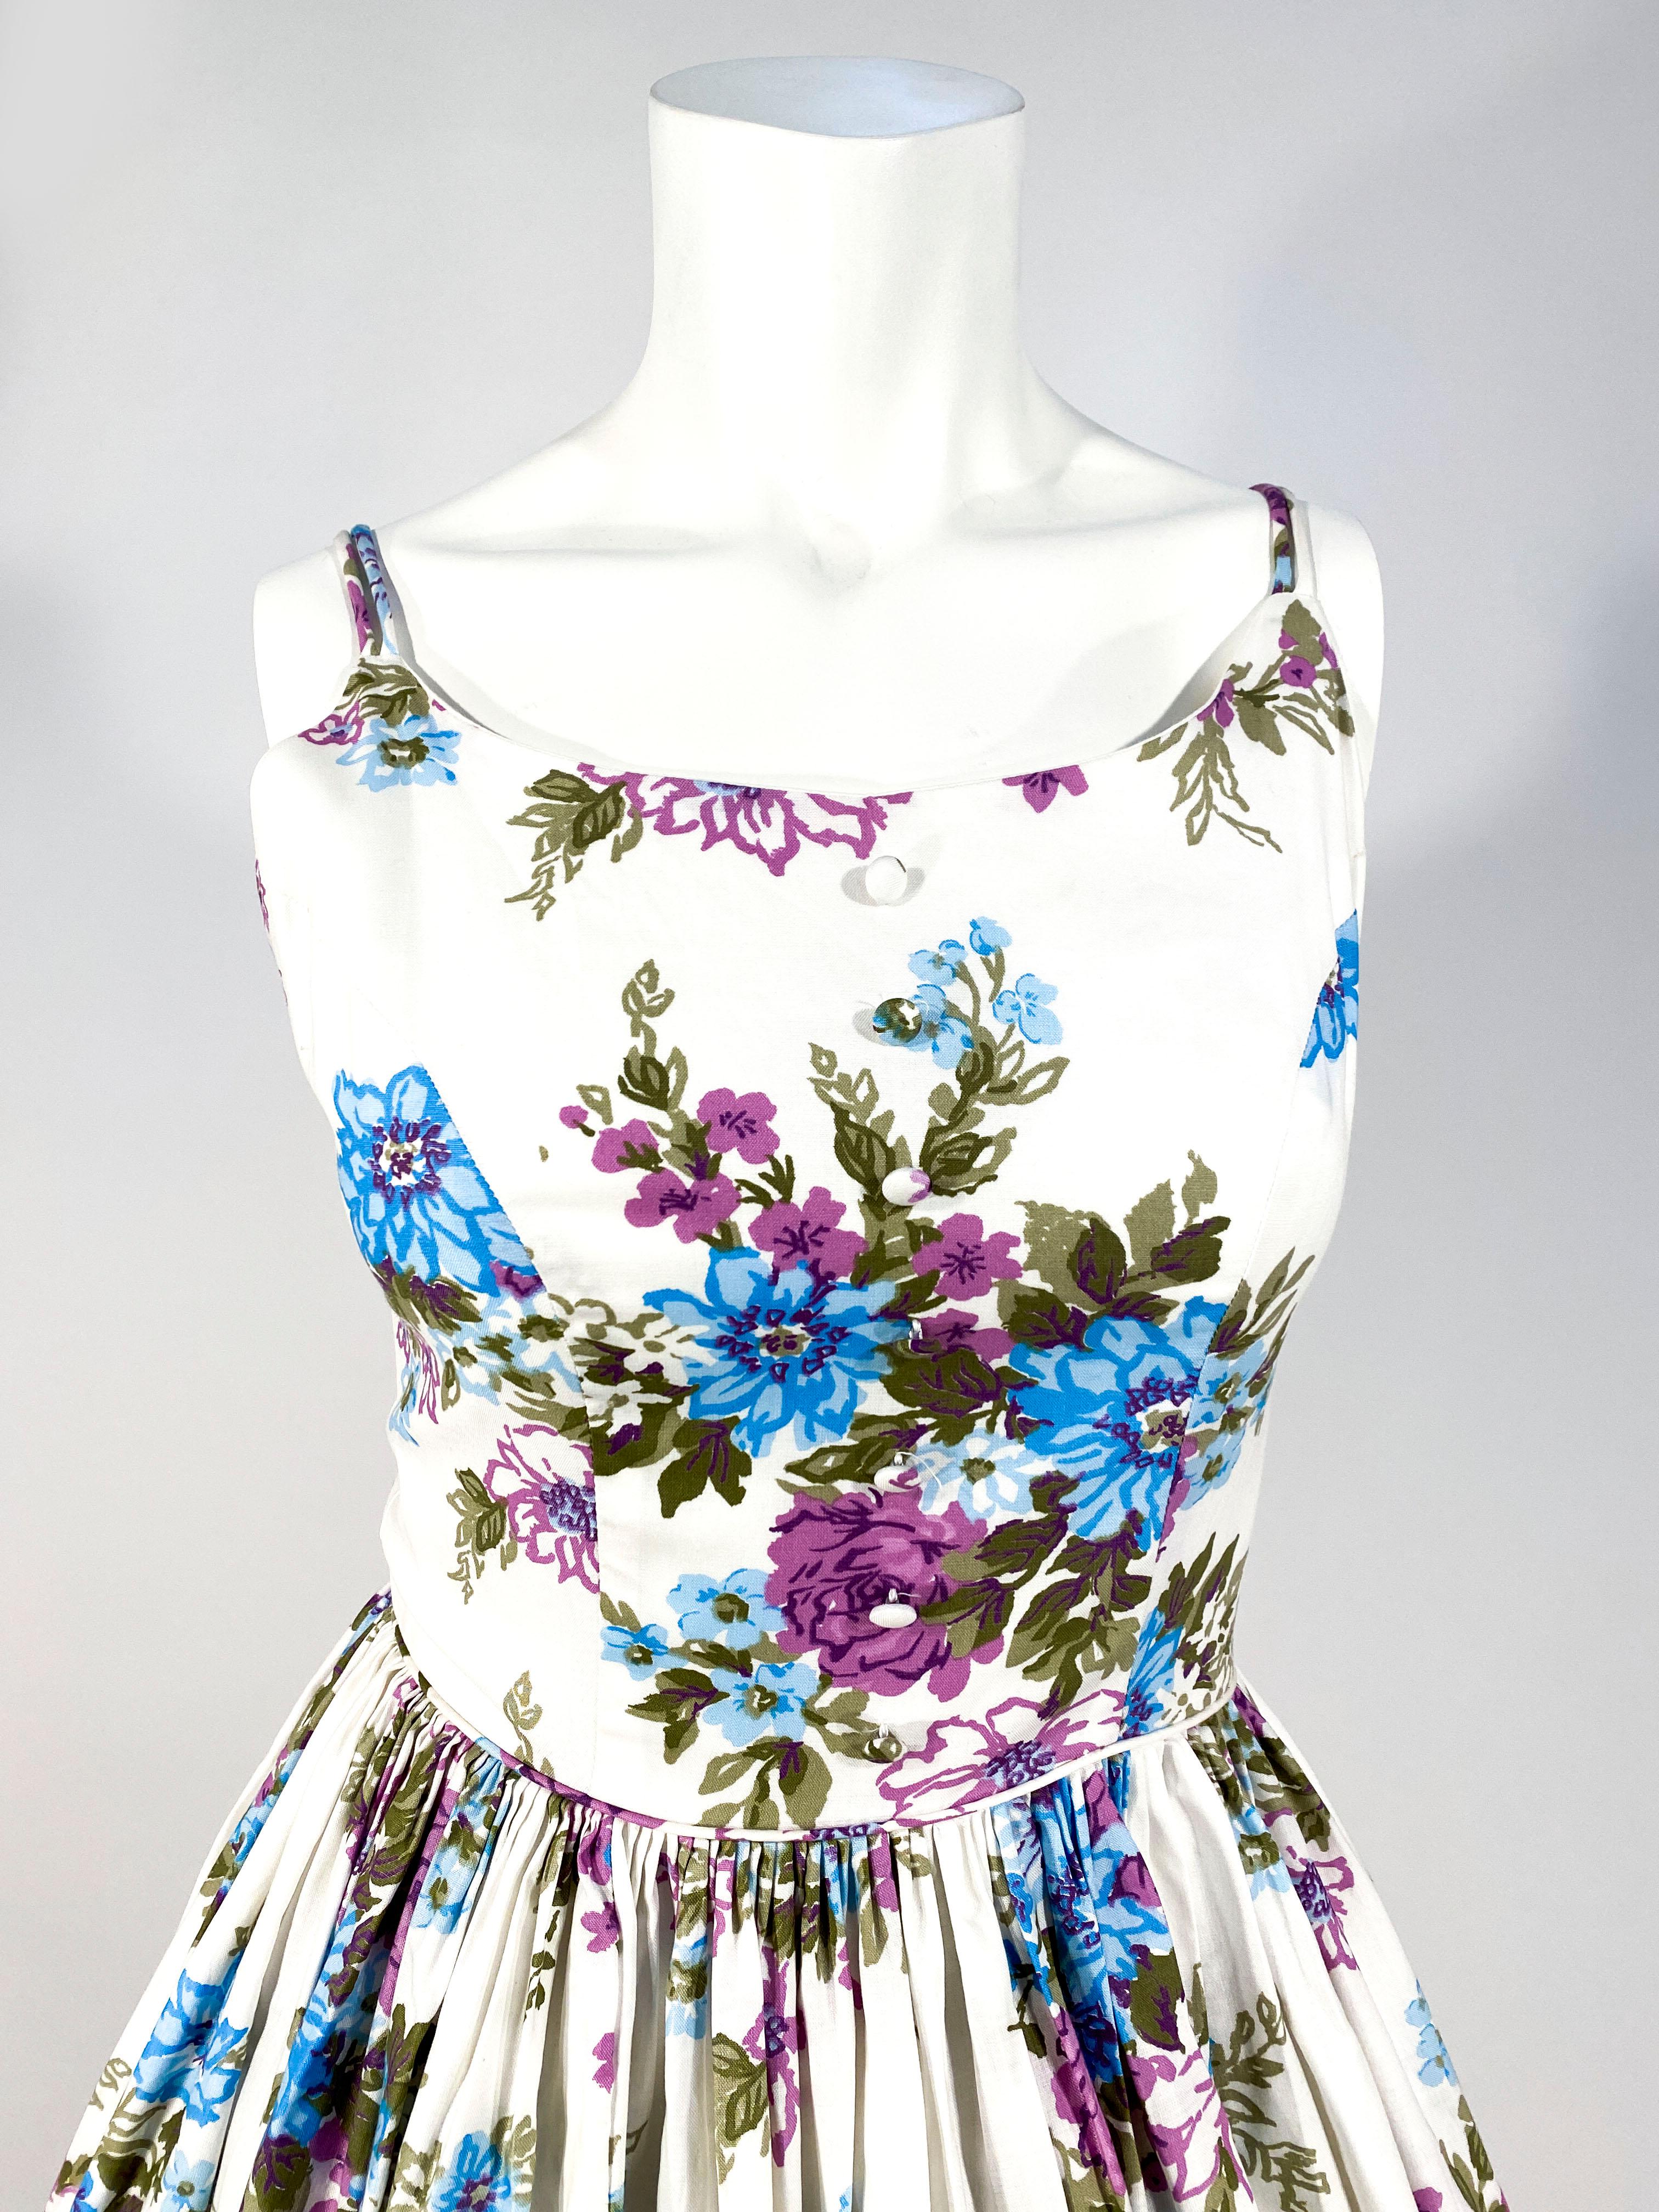 1950er Jahre Handgefertigtes Tageskleid aus Baumwolle mit Blumendruck in Aqua-, Violett- und Grüntönen auf weißem Grund. Der Rumpf ist ab der Taille in einen sehr vollen Faltenrock eingepasst. Das Mieder ist mit handbedeckten Knöpfen verziert und im